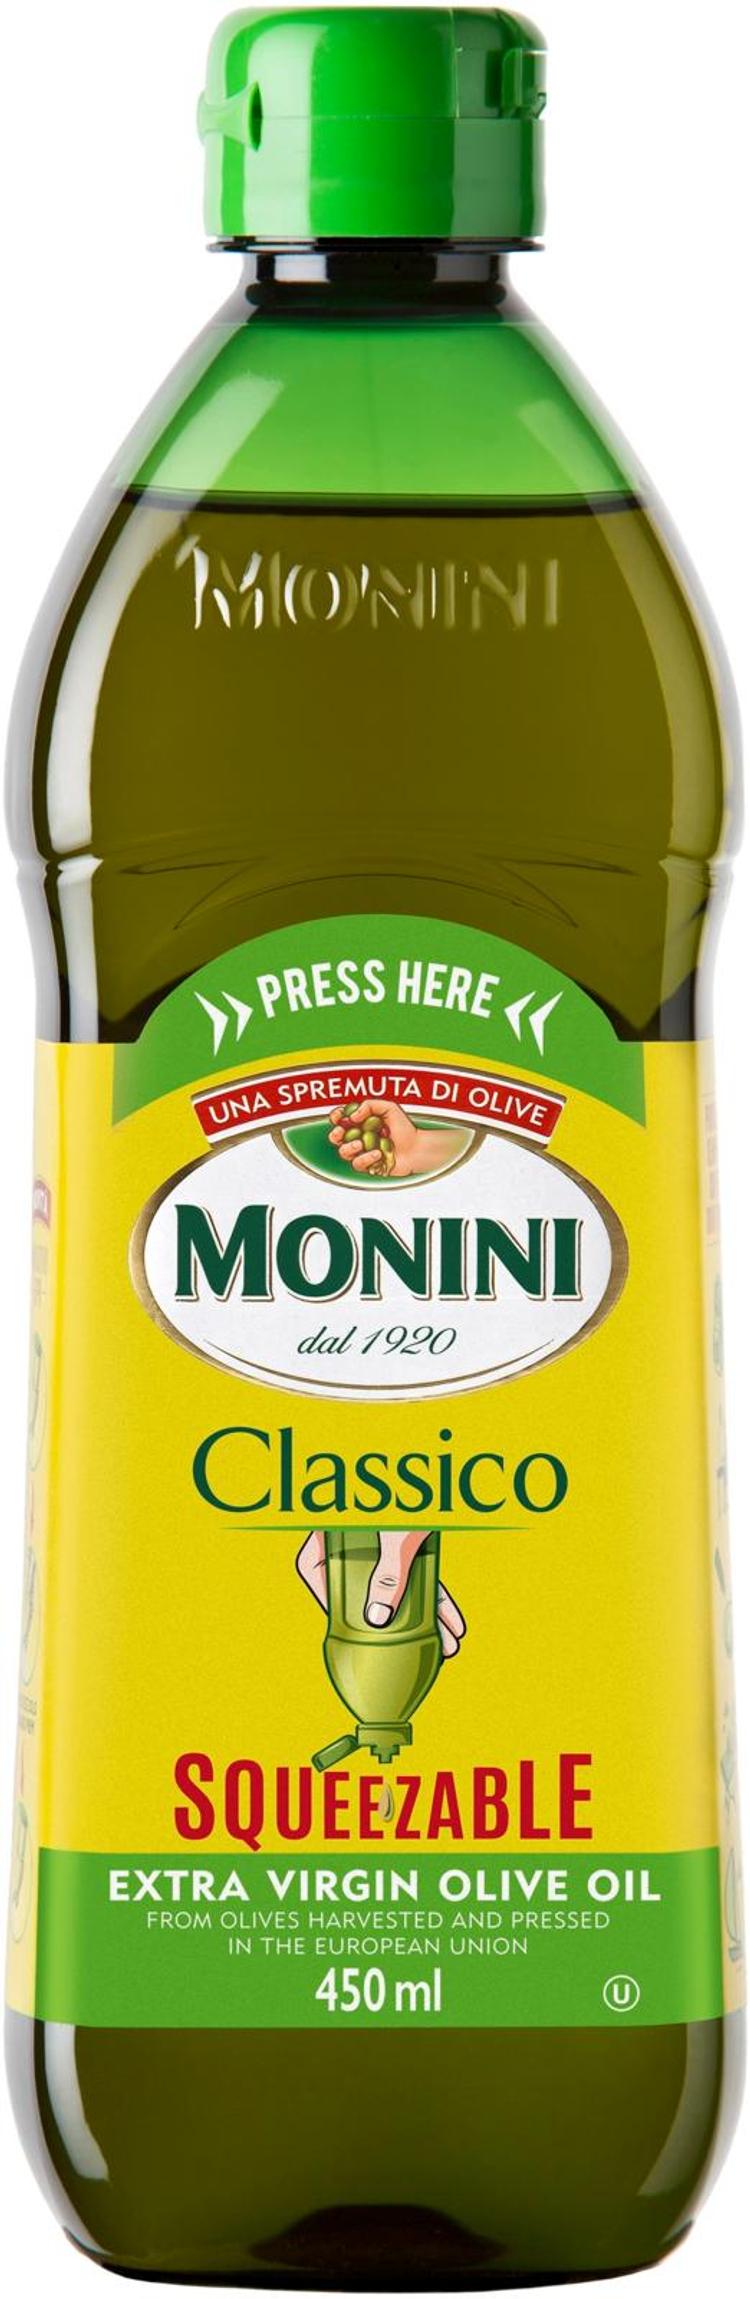 Monini Classico Squeezable ekstra-neitsytoliiviöljy 450 ml